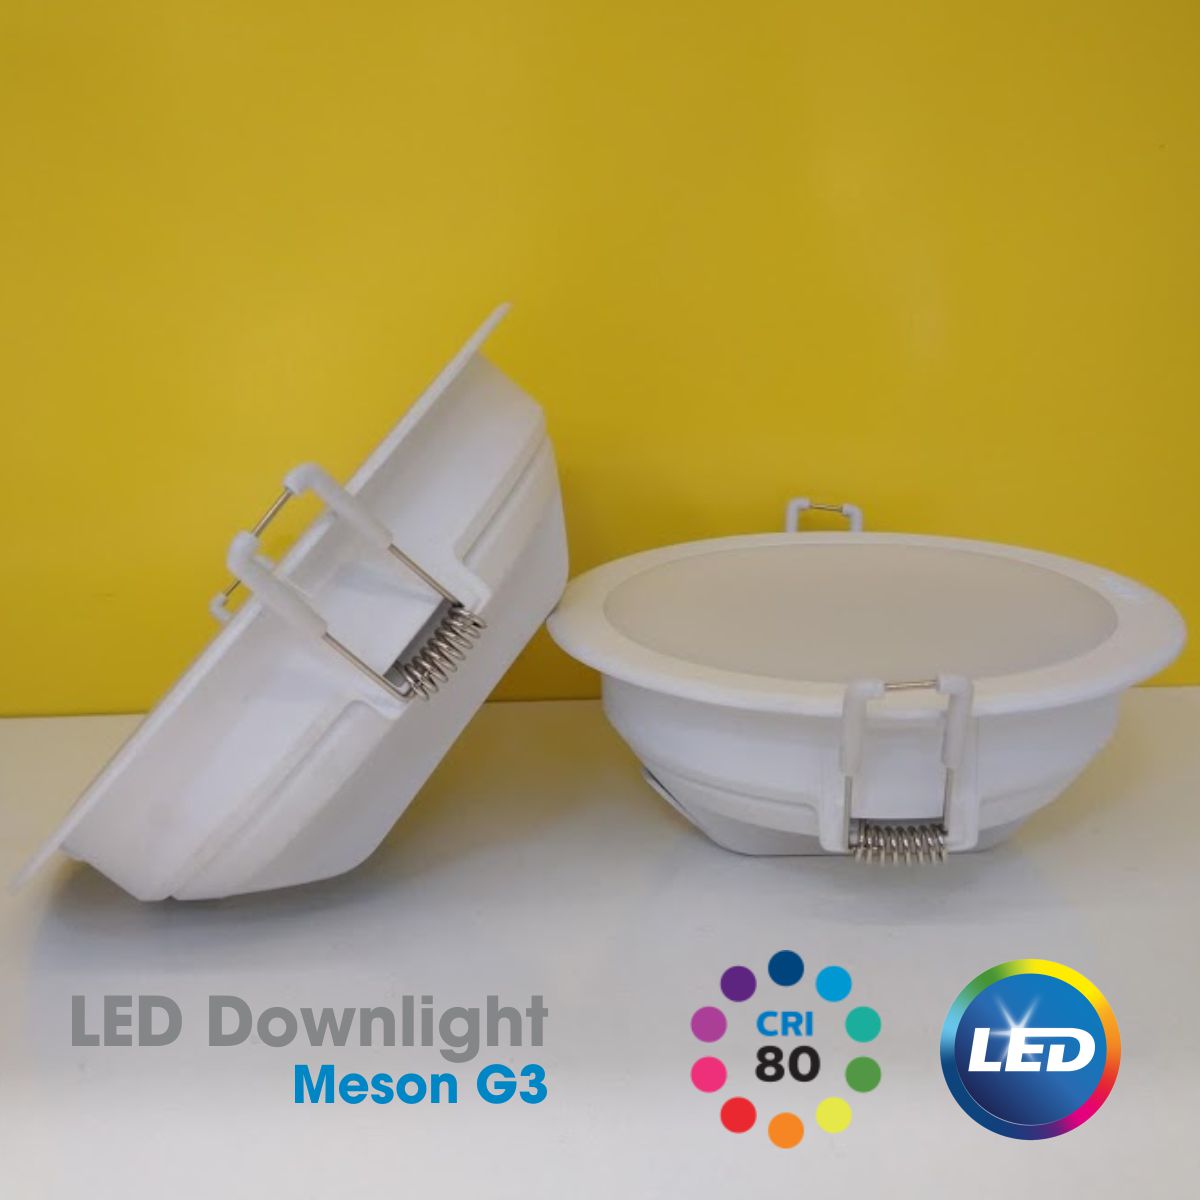 Bộ đèn LED Downlight Meson G3 PHILIPS 220V-240V - Ánh sáng đồng đều, giá cạnh tranh - Hàng Chính Hãng